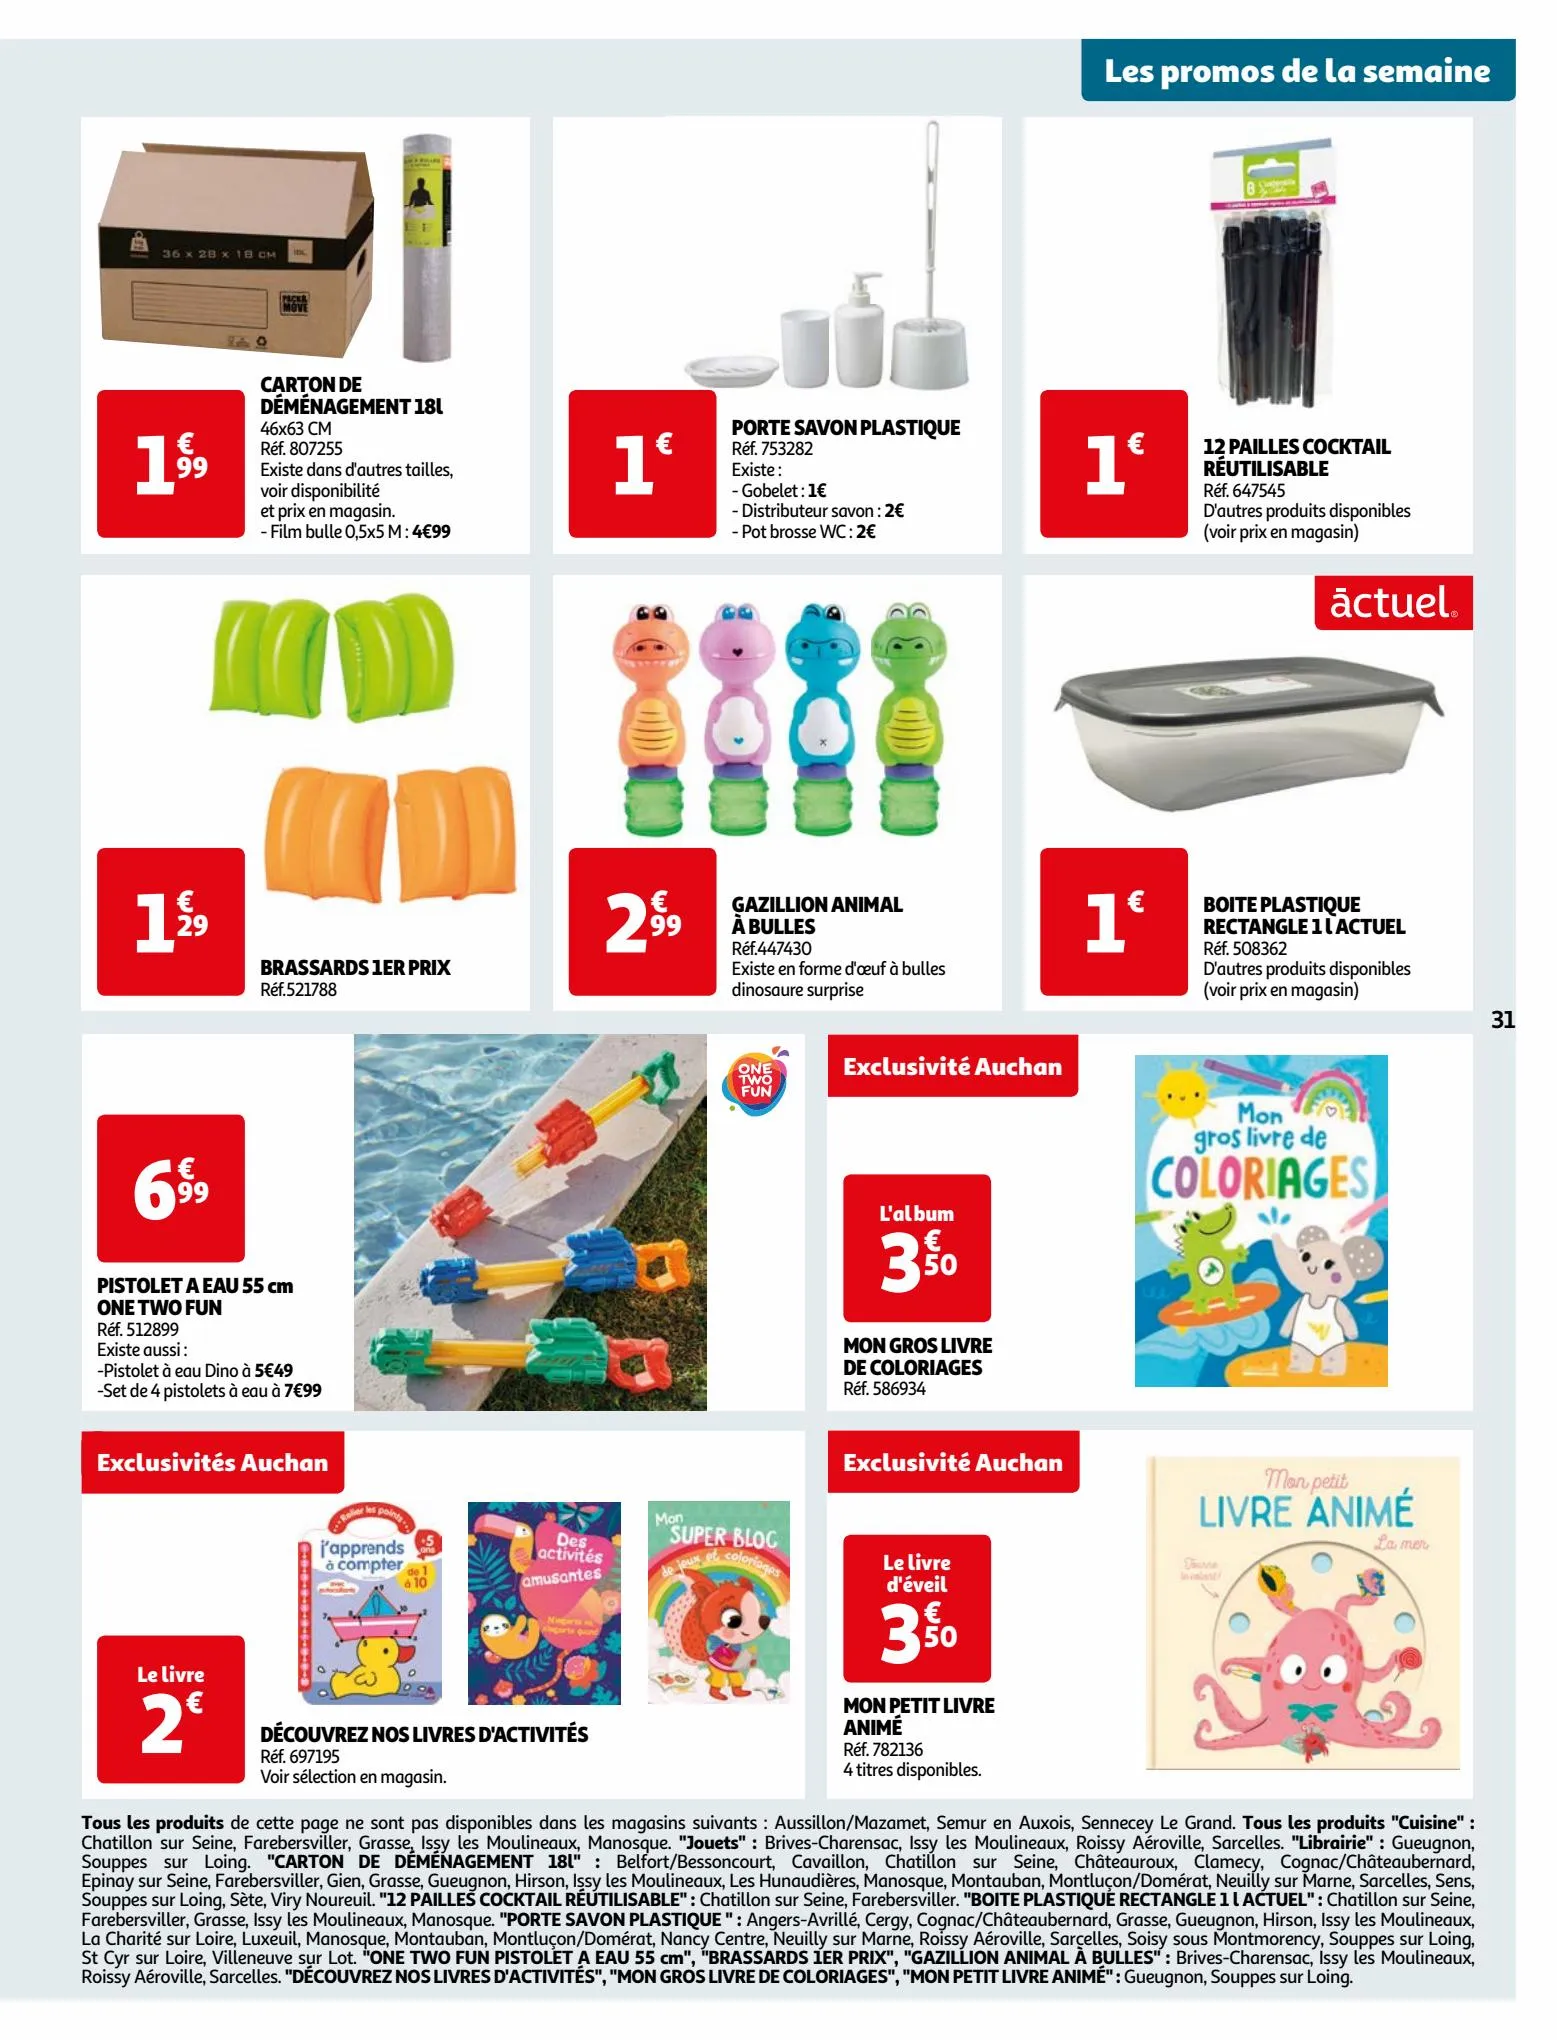 Catalogue Vos produits laitiers à petits prix !, page 00031